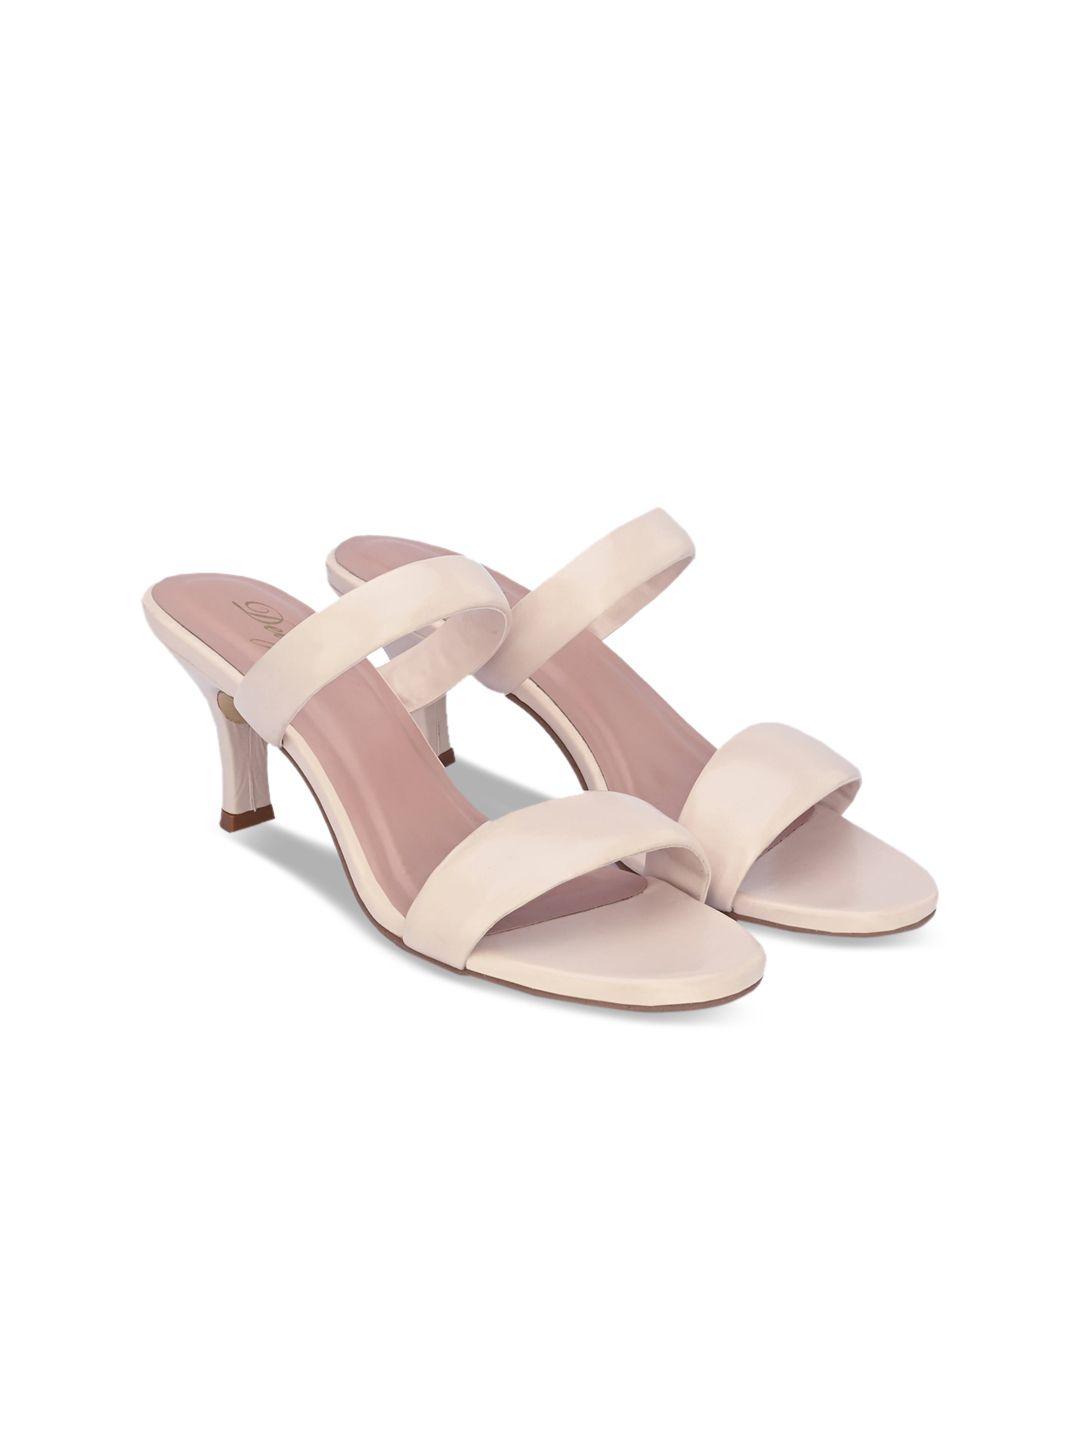 delize off white slim heeled sandals